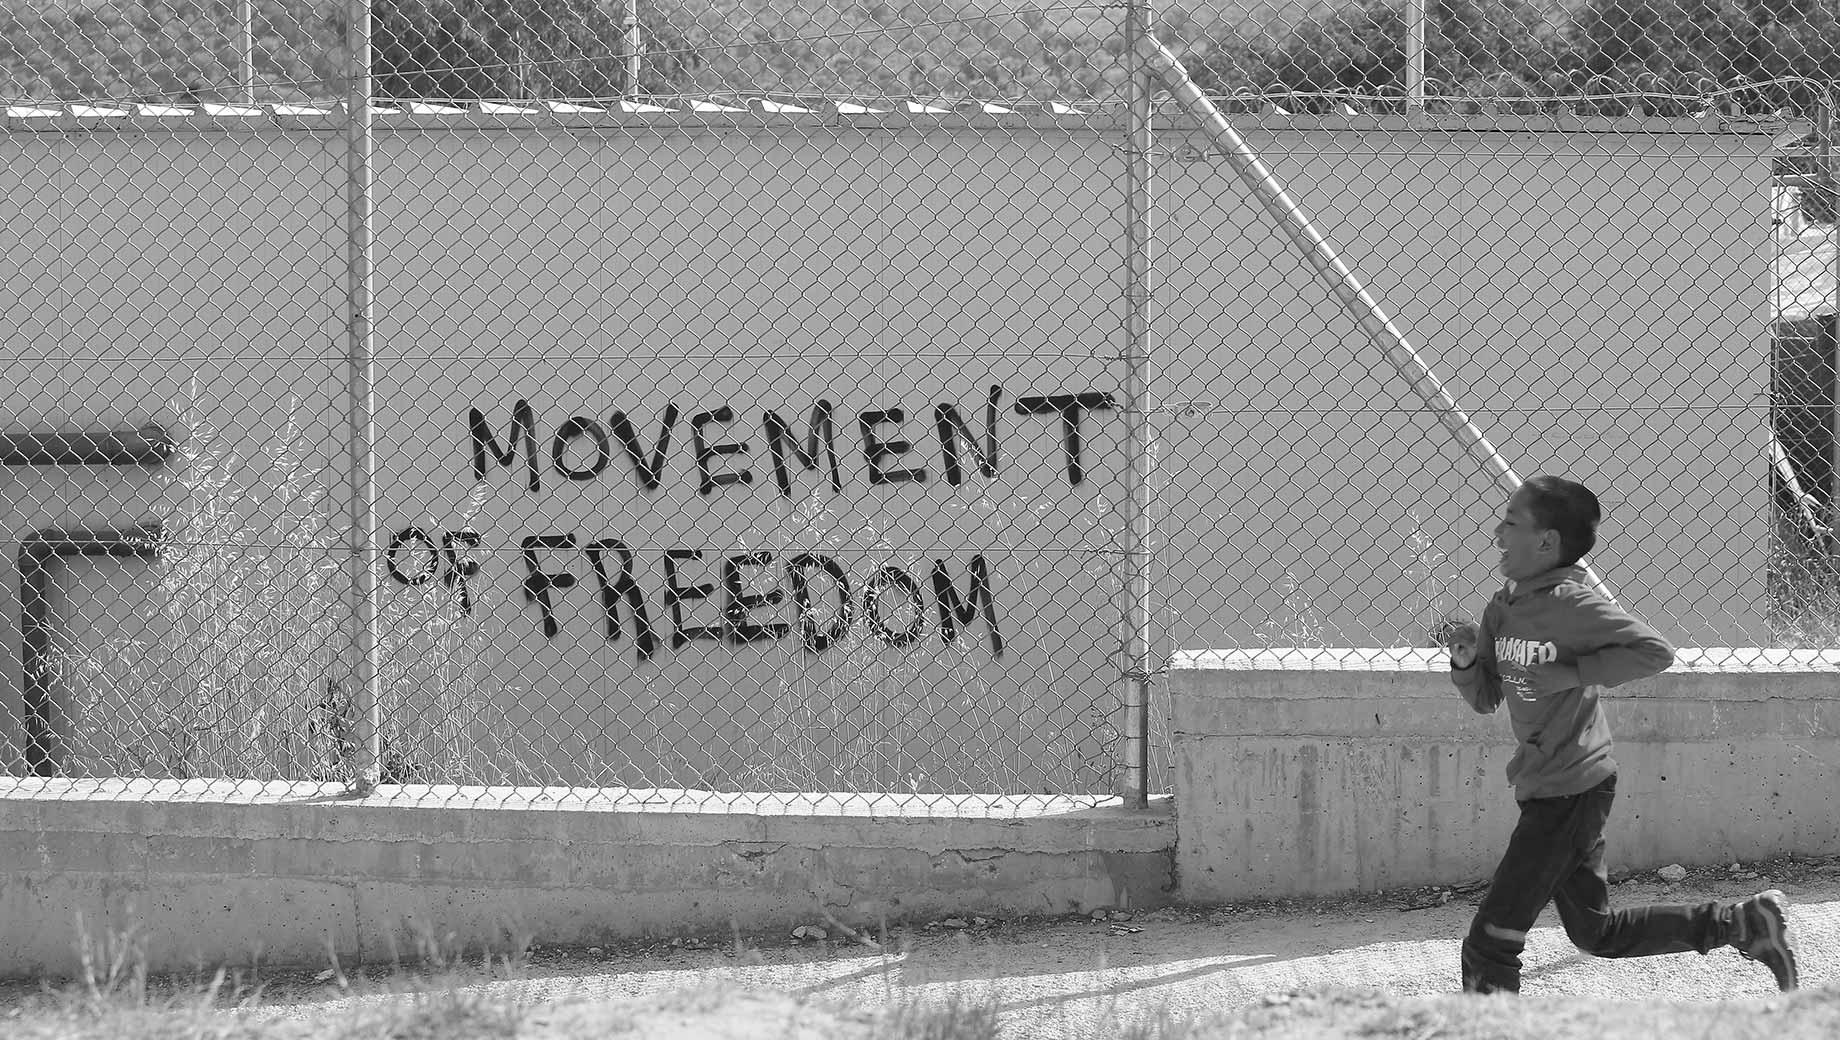 wall graffiti reads 'Movement of Freedom'